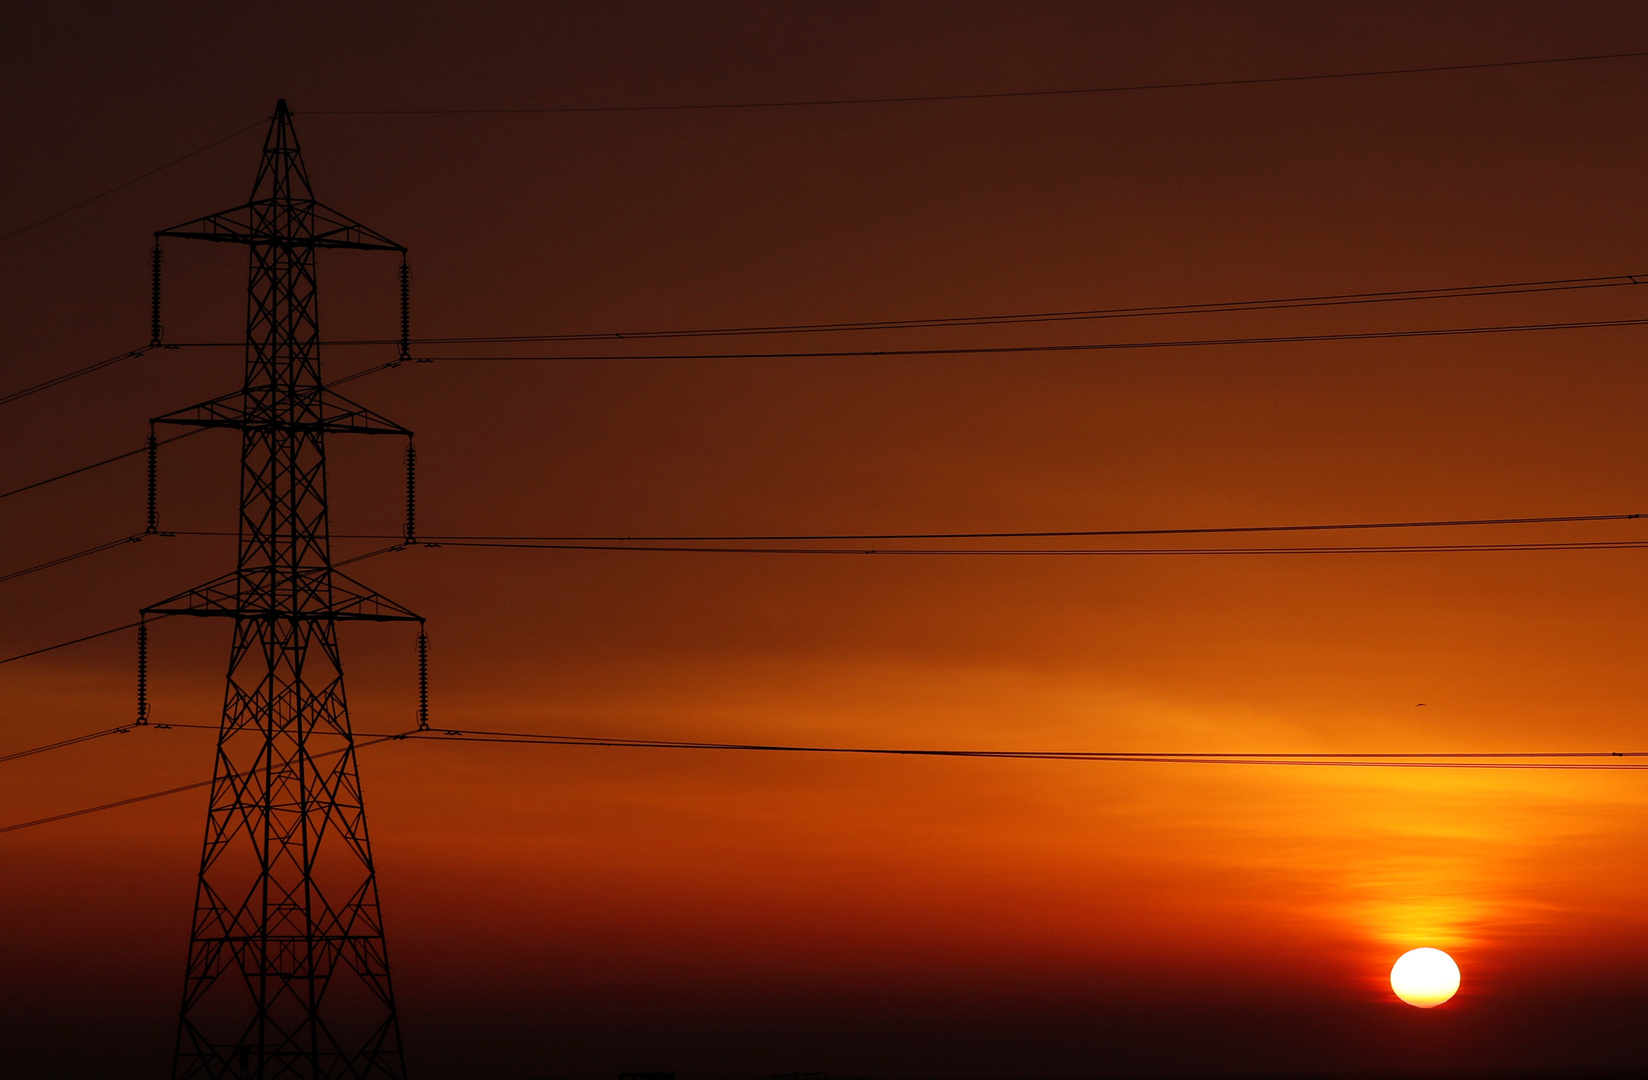 قائمة مواعيد قطع الكهرباء في الجيزة الفترة القادمة وفقًا لقرار وزارة الكهرباء